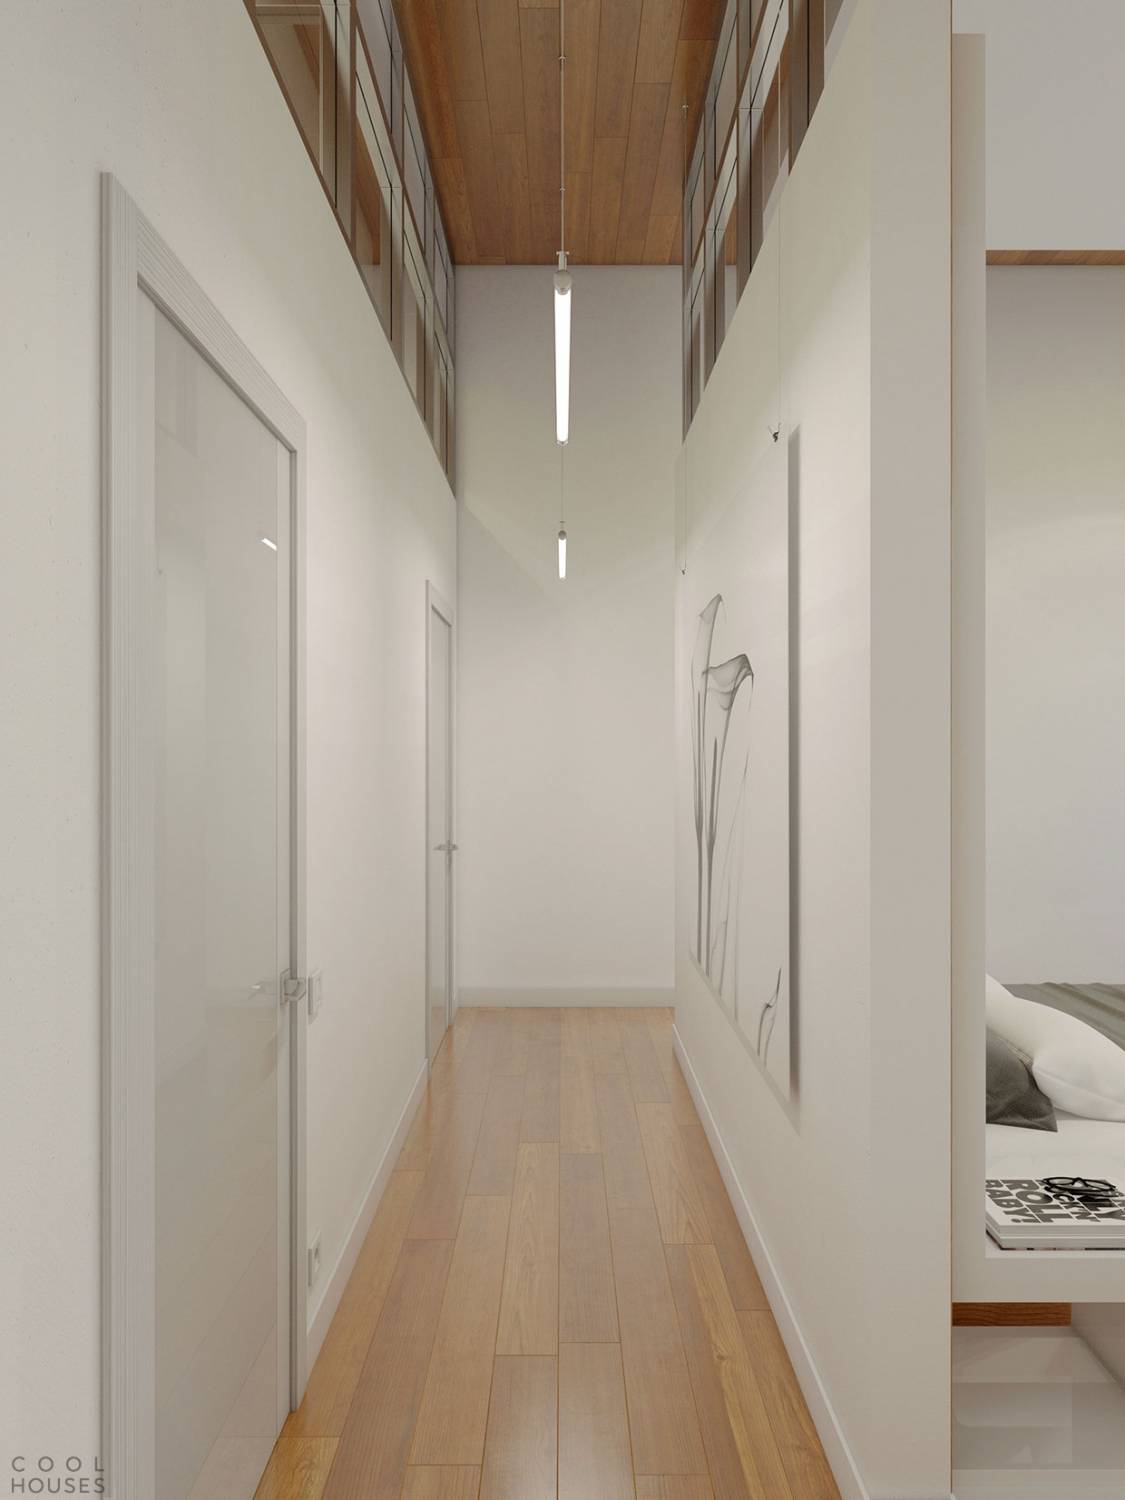 Проект дизайна квартиры-студии в стиле минимализма